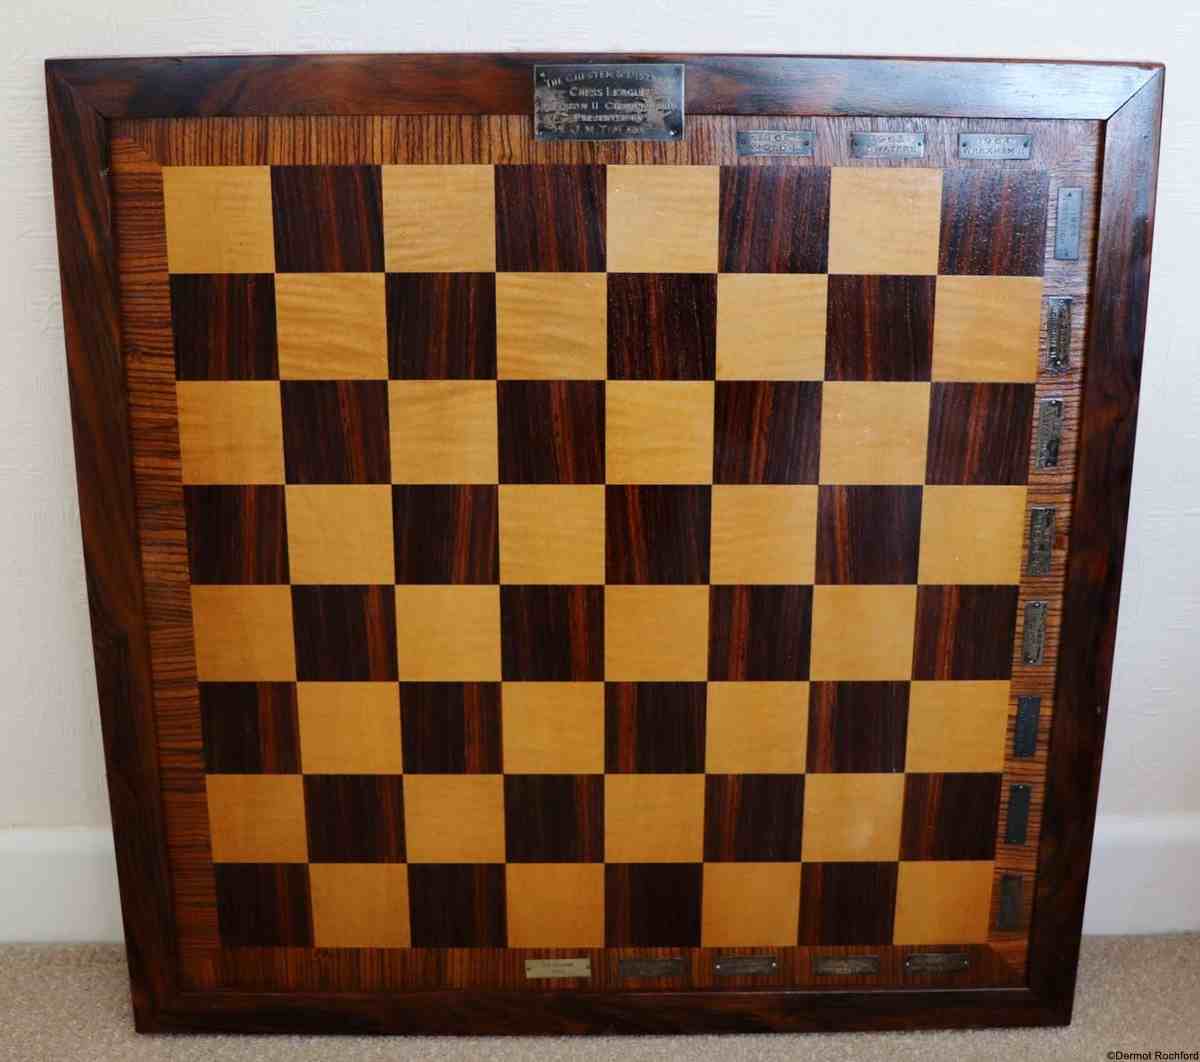 English Club Chessboard